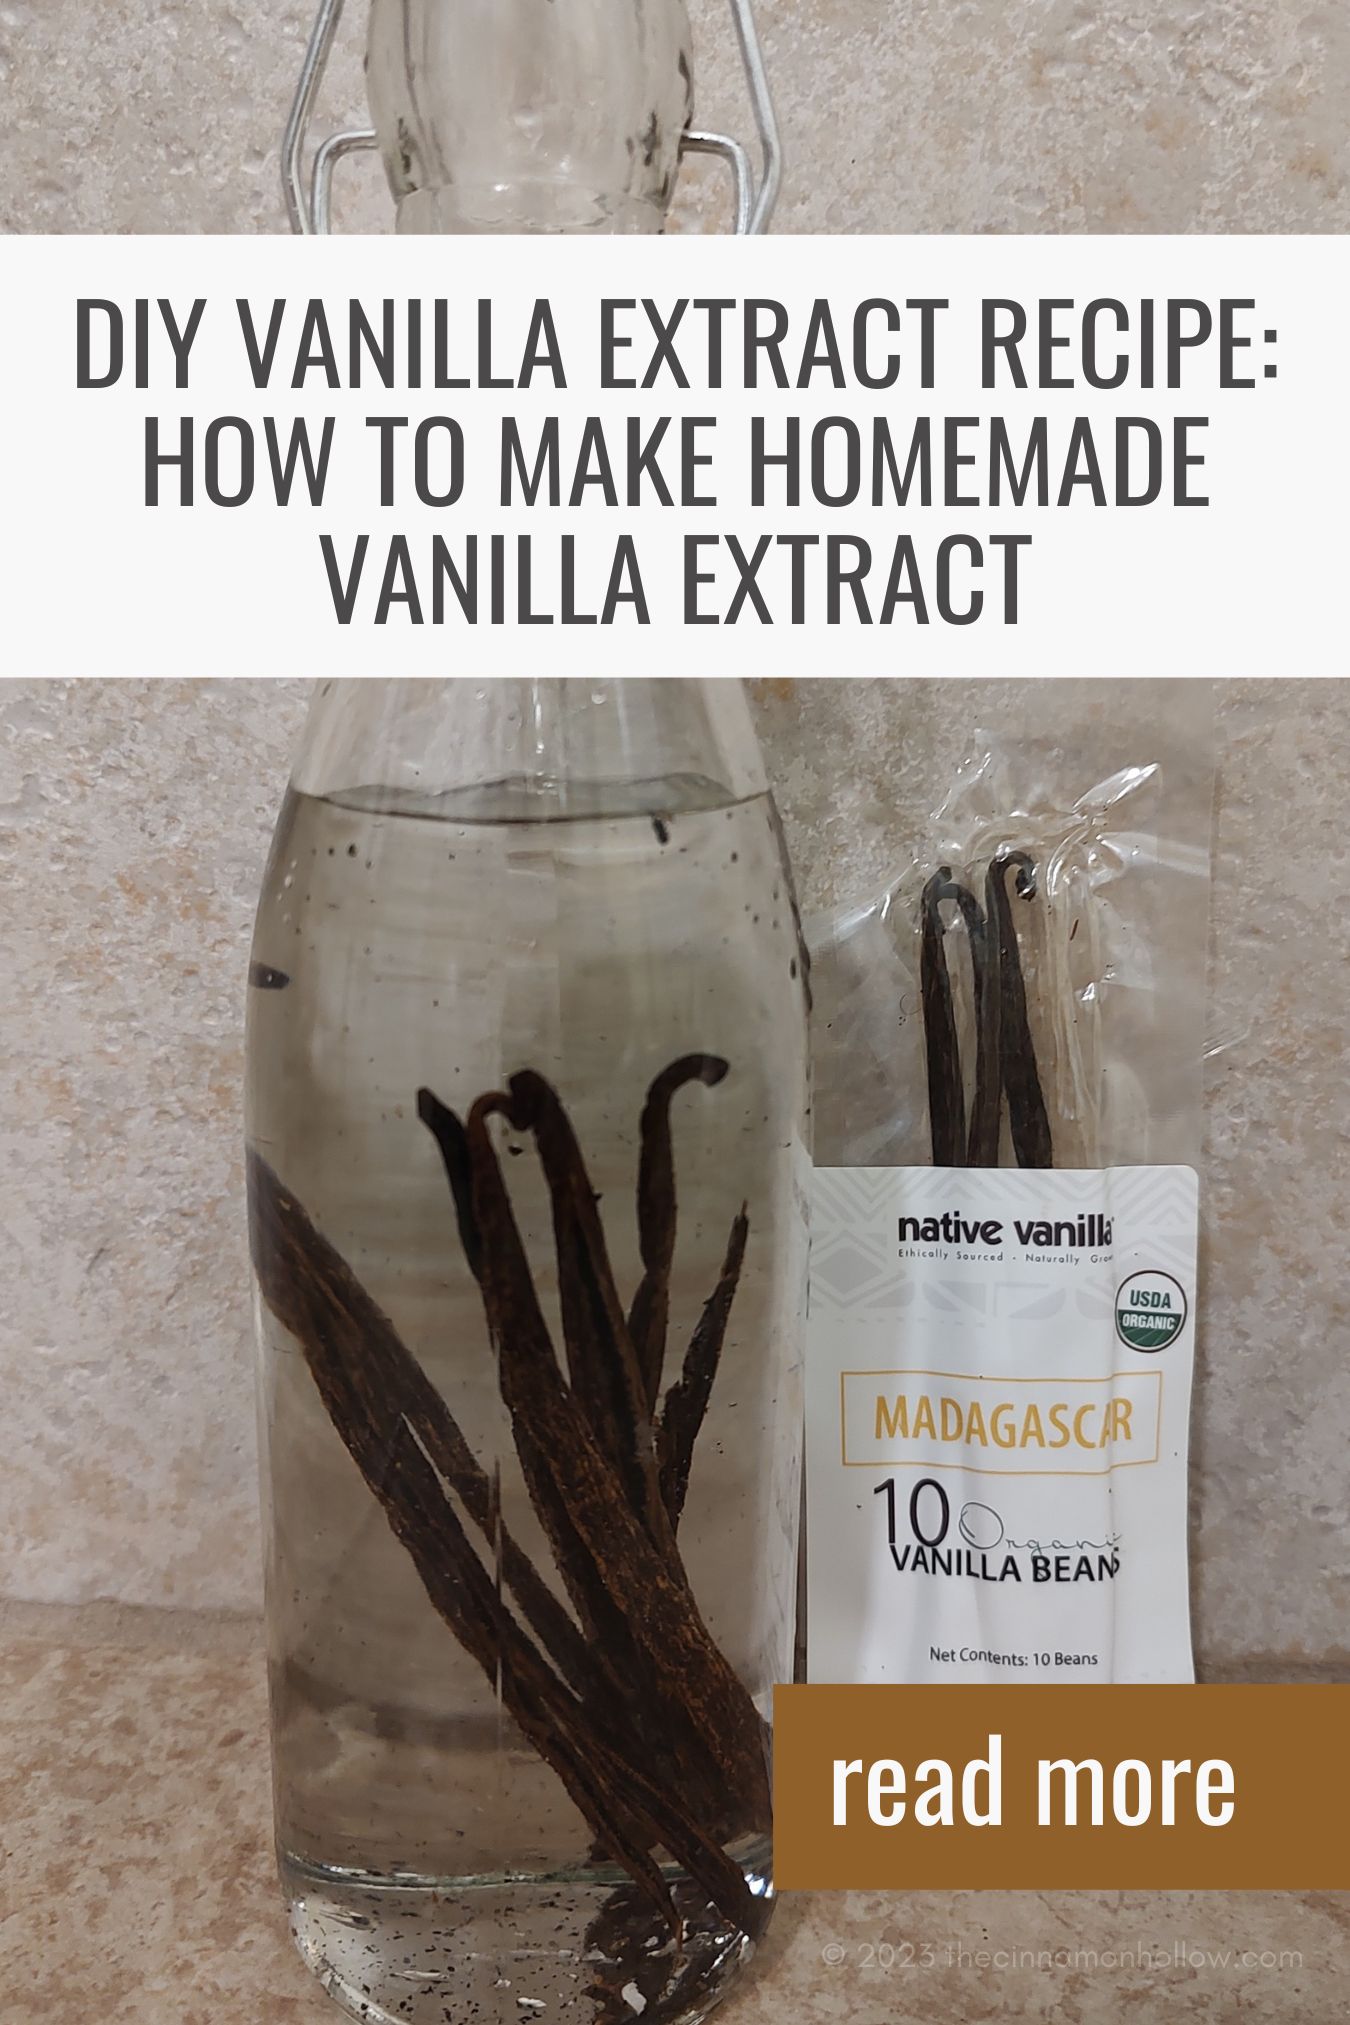 Homemade Vanilla Extract Recipe - How to Make Vanilla Extract